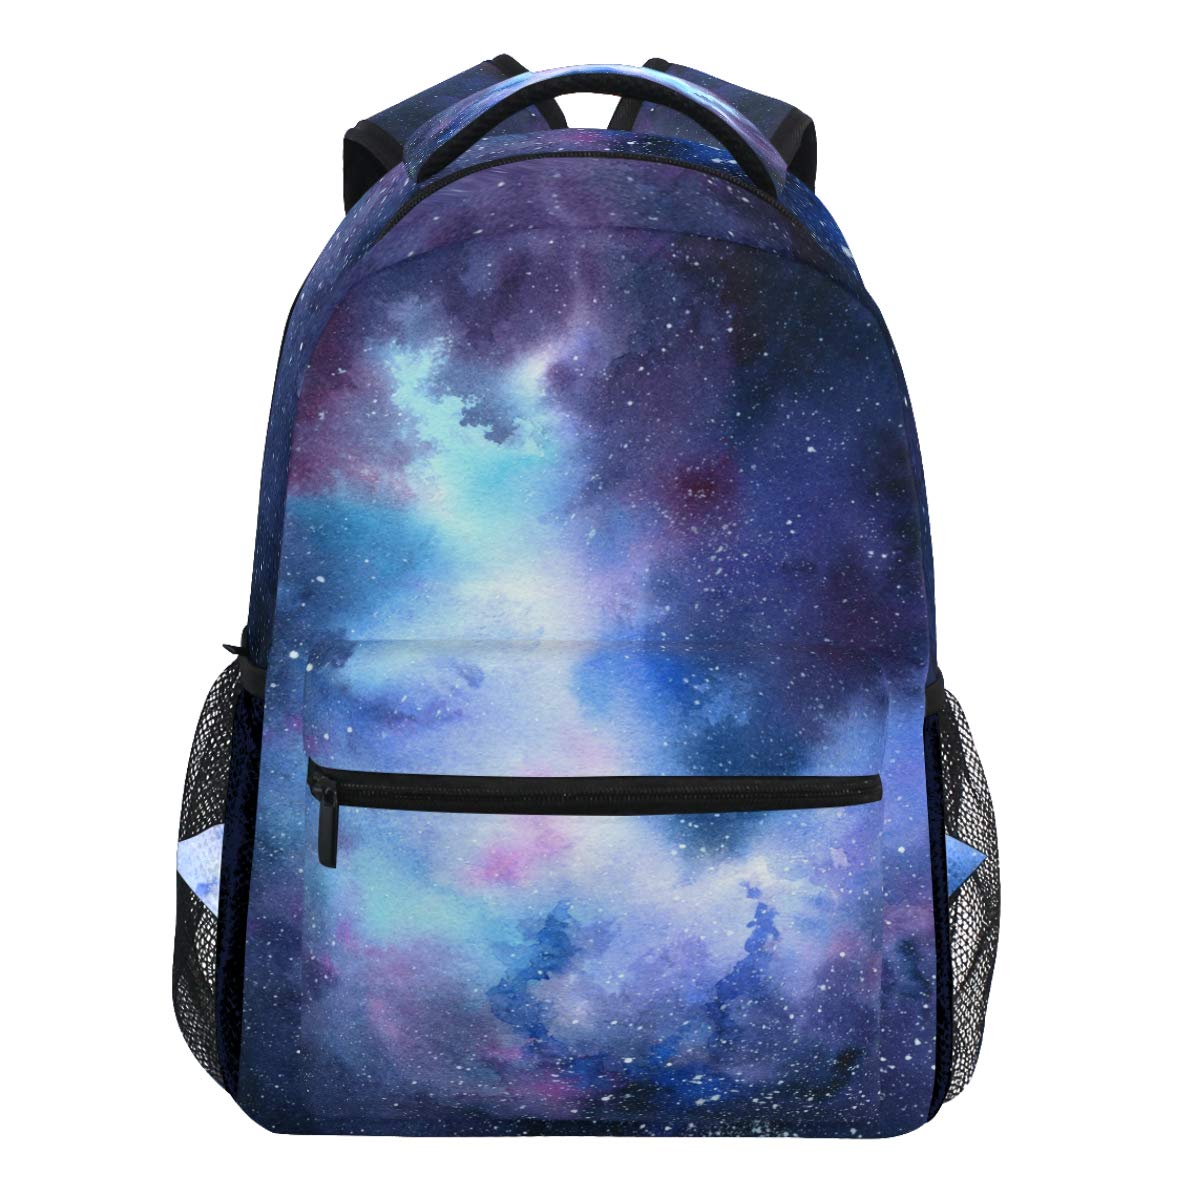 Oarencol Cosmic Galaxy Star Blauer Rucksack, bunt, Wasserfarben, Platz für Büchertasche, Reisen, Schule, Hochschultasche für Damen, Herren und Jungen